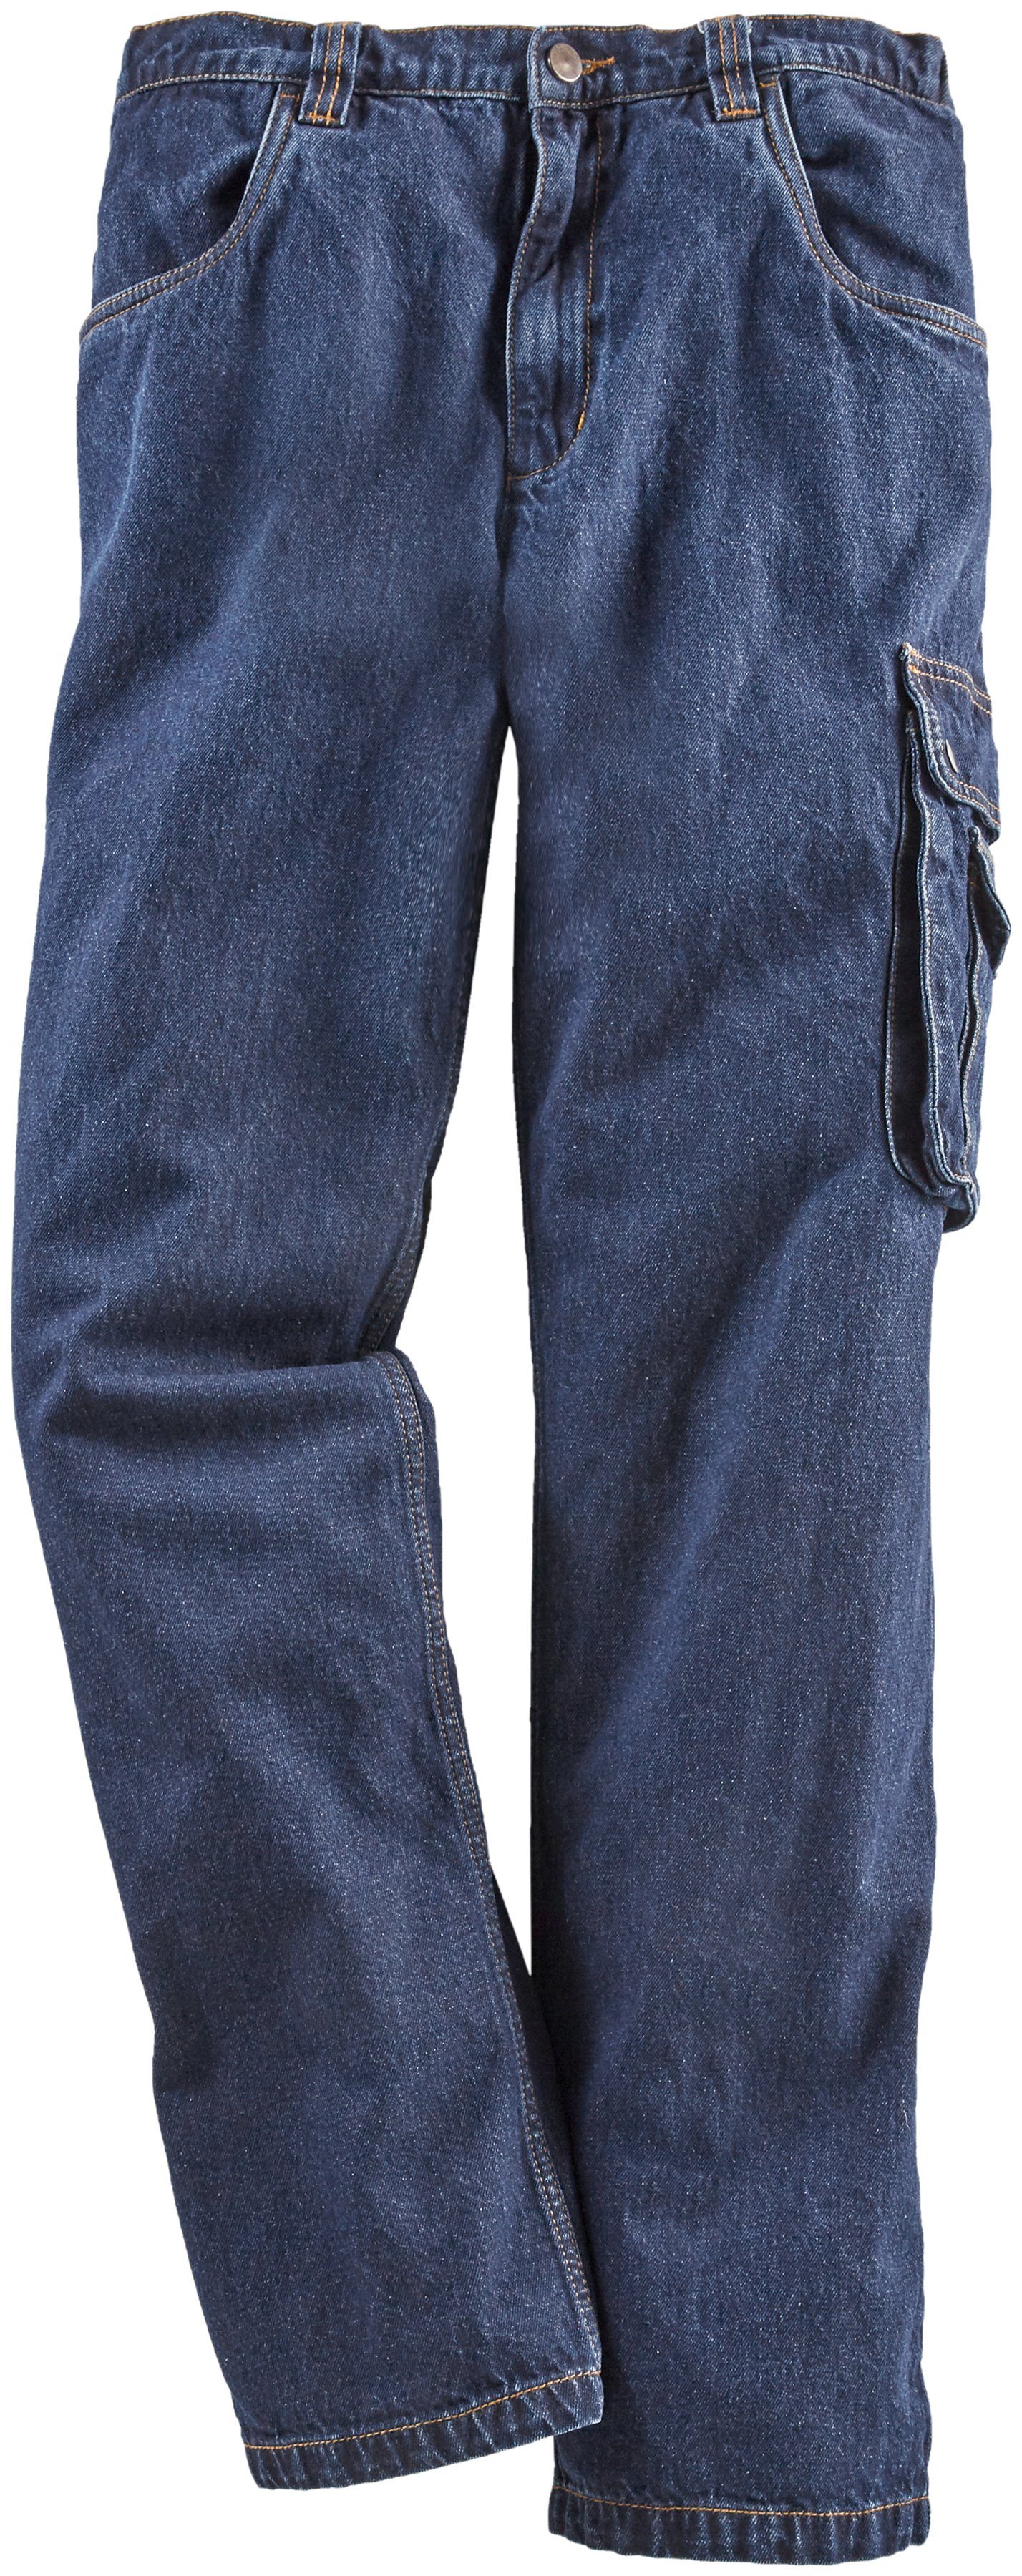 comfort Baumwolle, (aus mit Country fit) praktischen Arbeitshose Jeans Jeansstoff, 8 dehnbarem Bund, Northern mit 100% Worker Taschen robuster